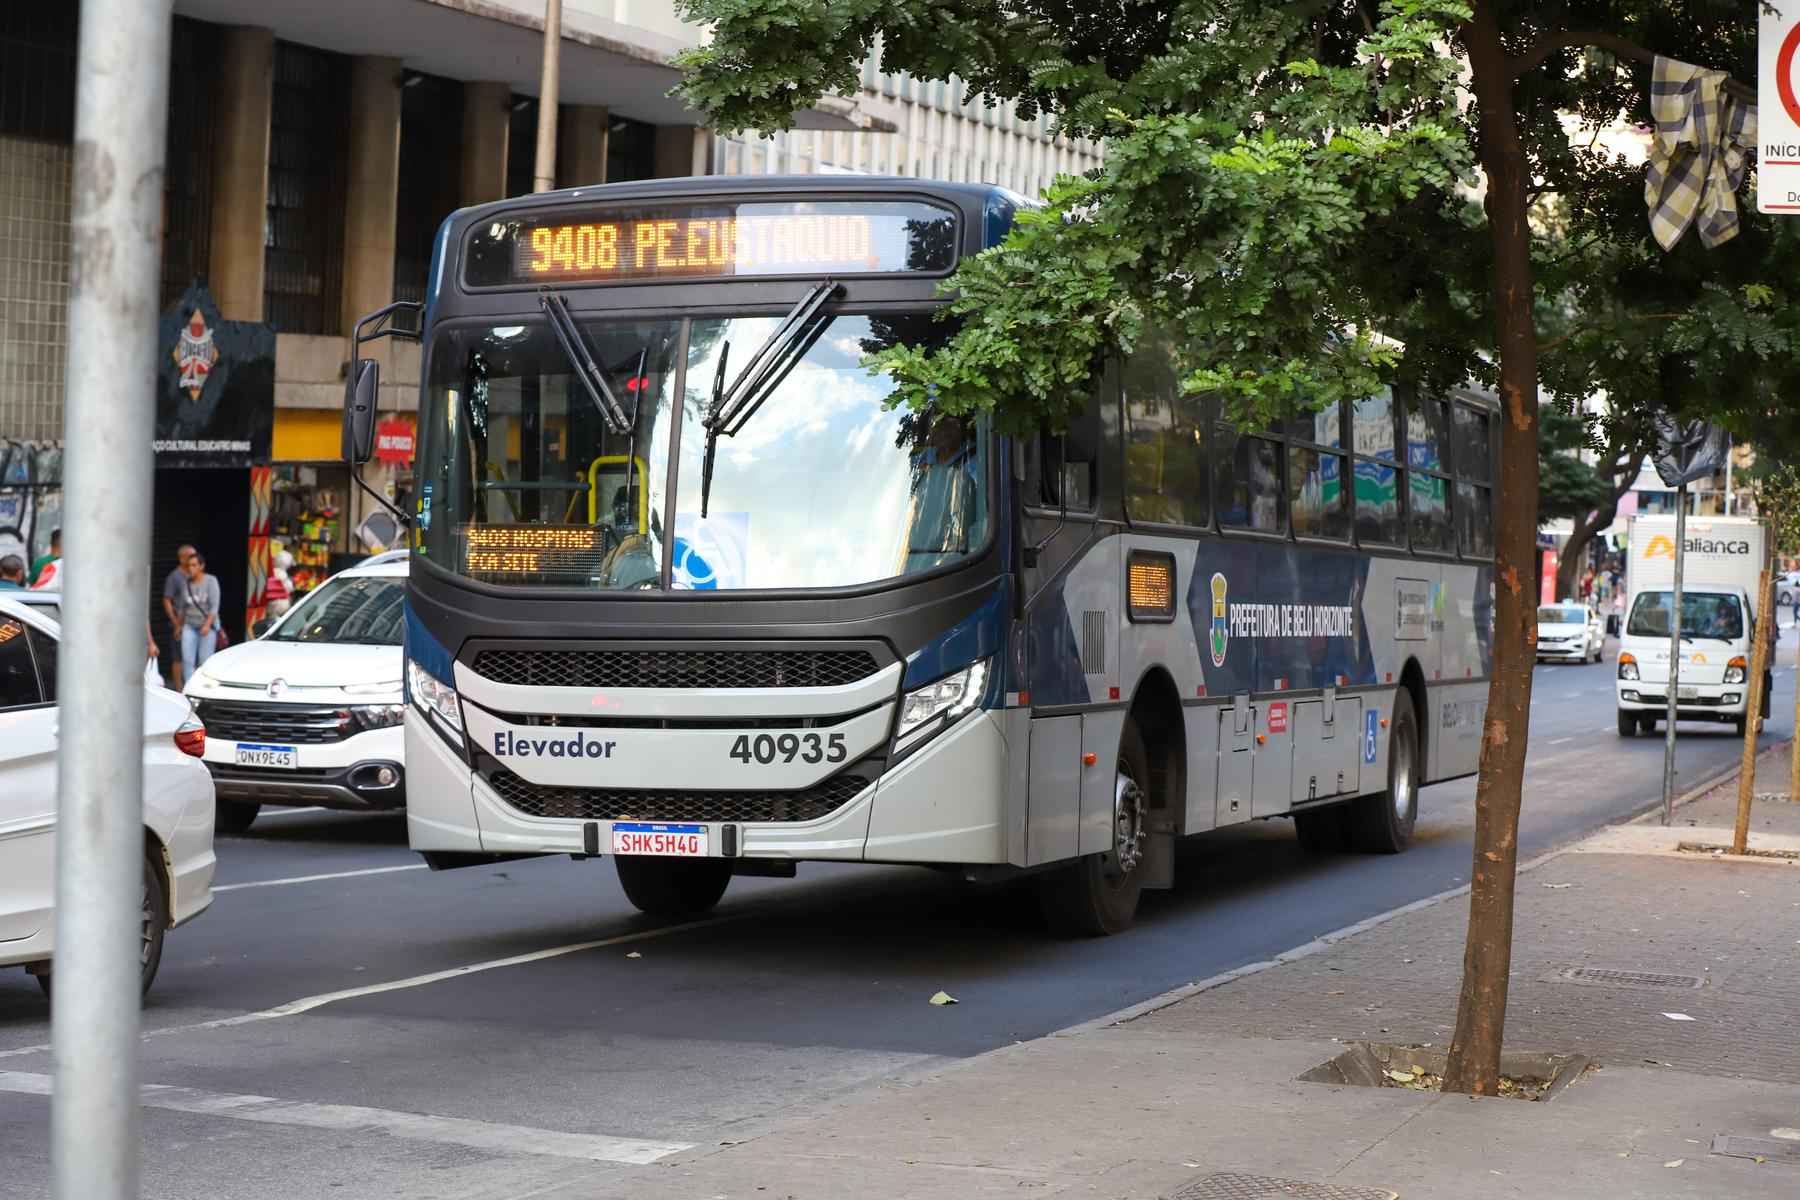 Câmara de vereadores segue trabalhando na melhoria do transporte público